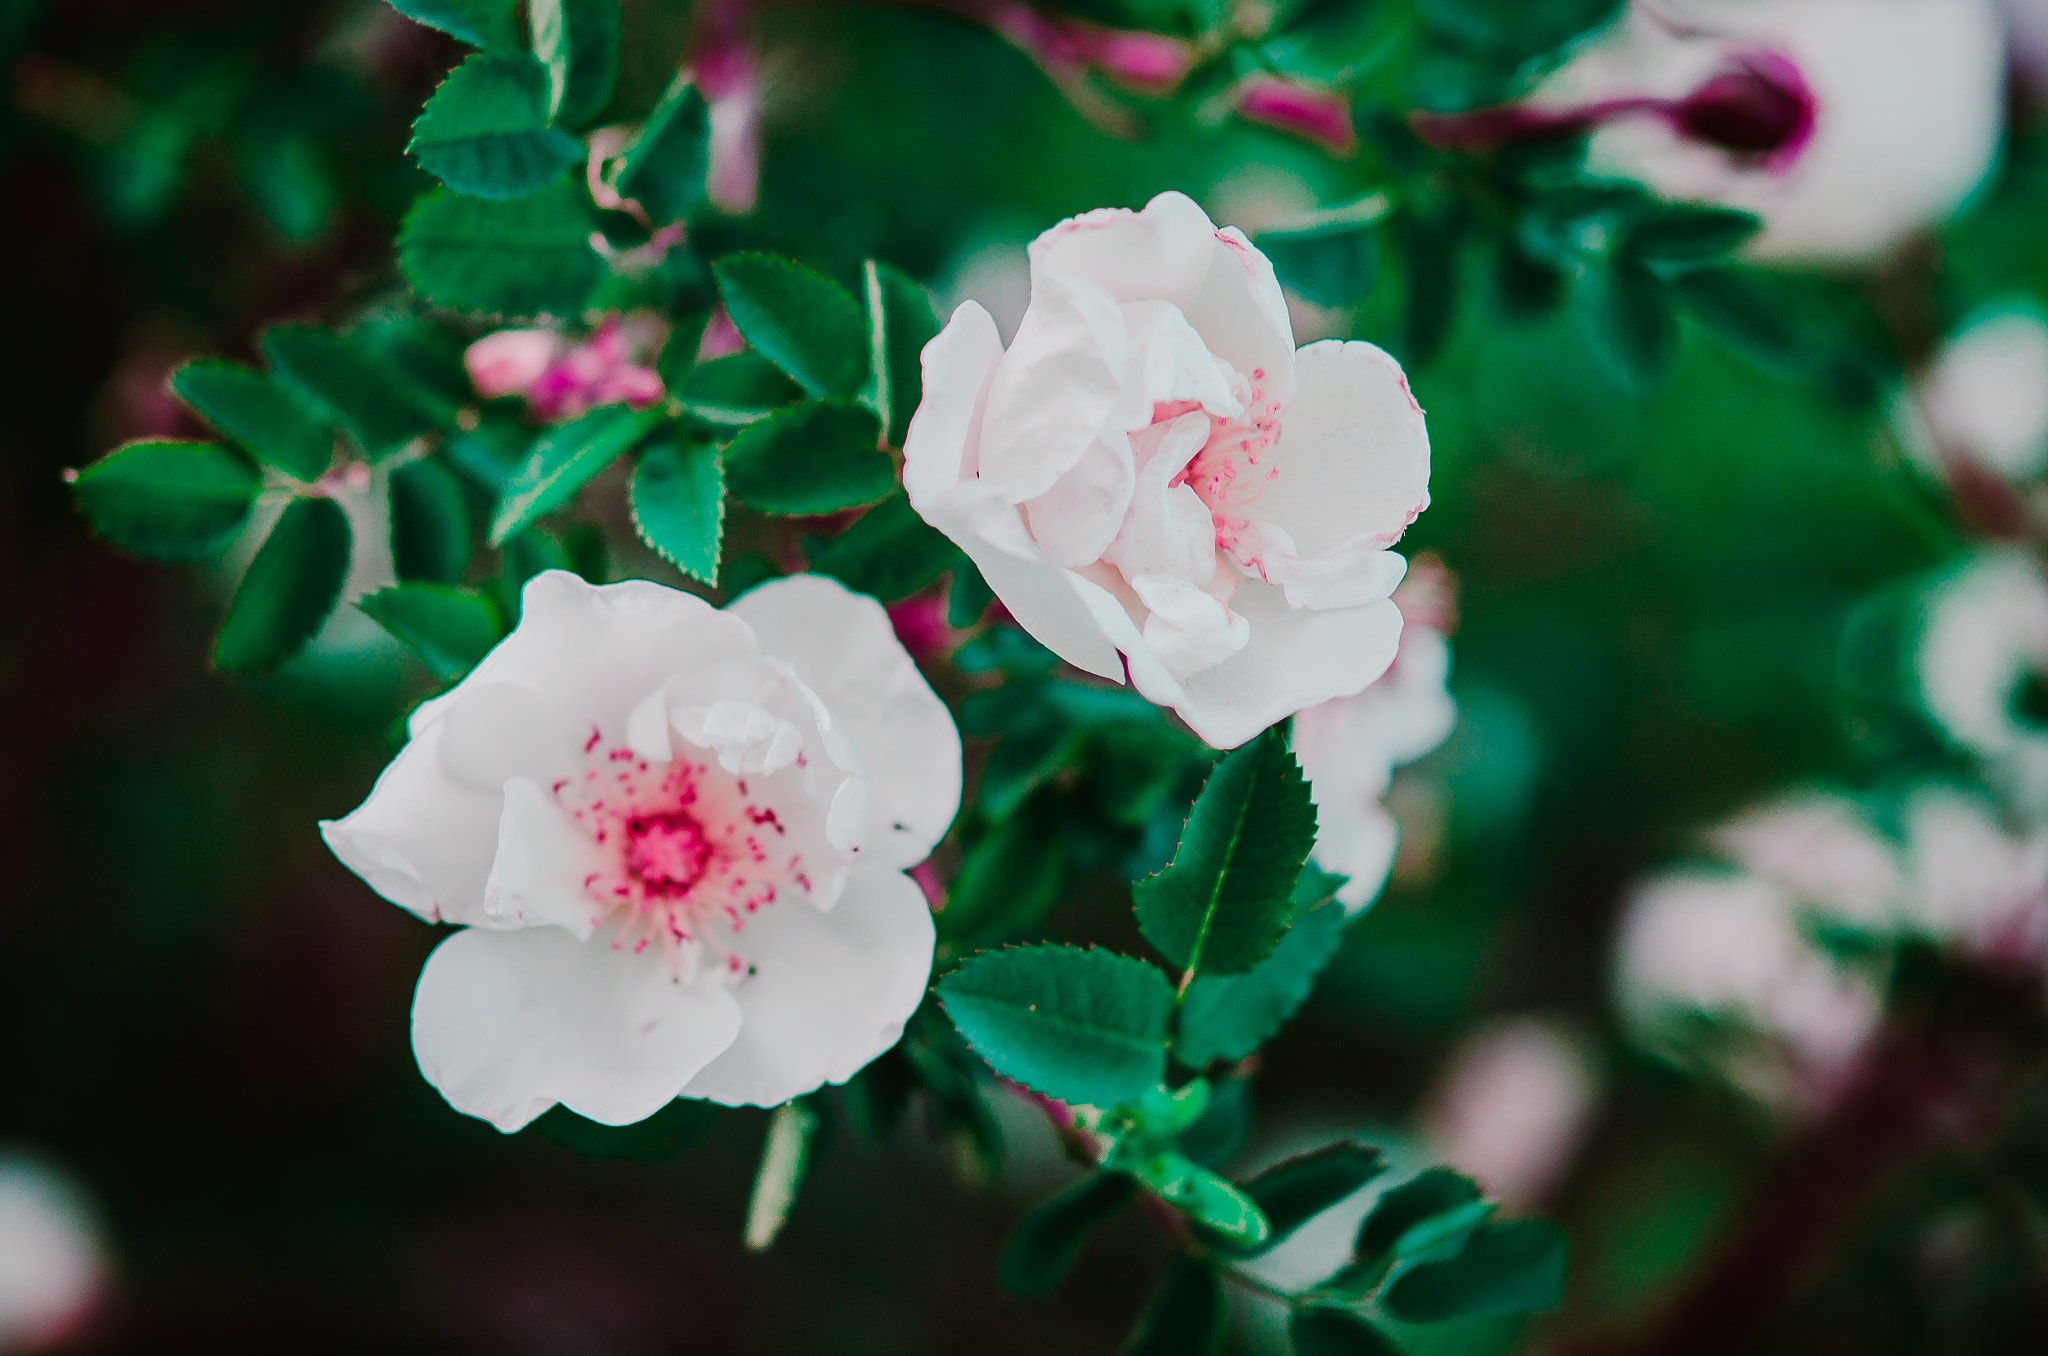 Nikon D5100 sample photo. Garden roses photography